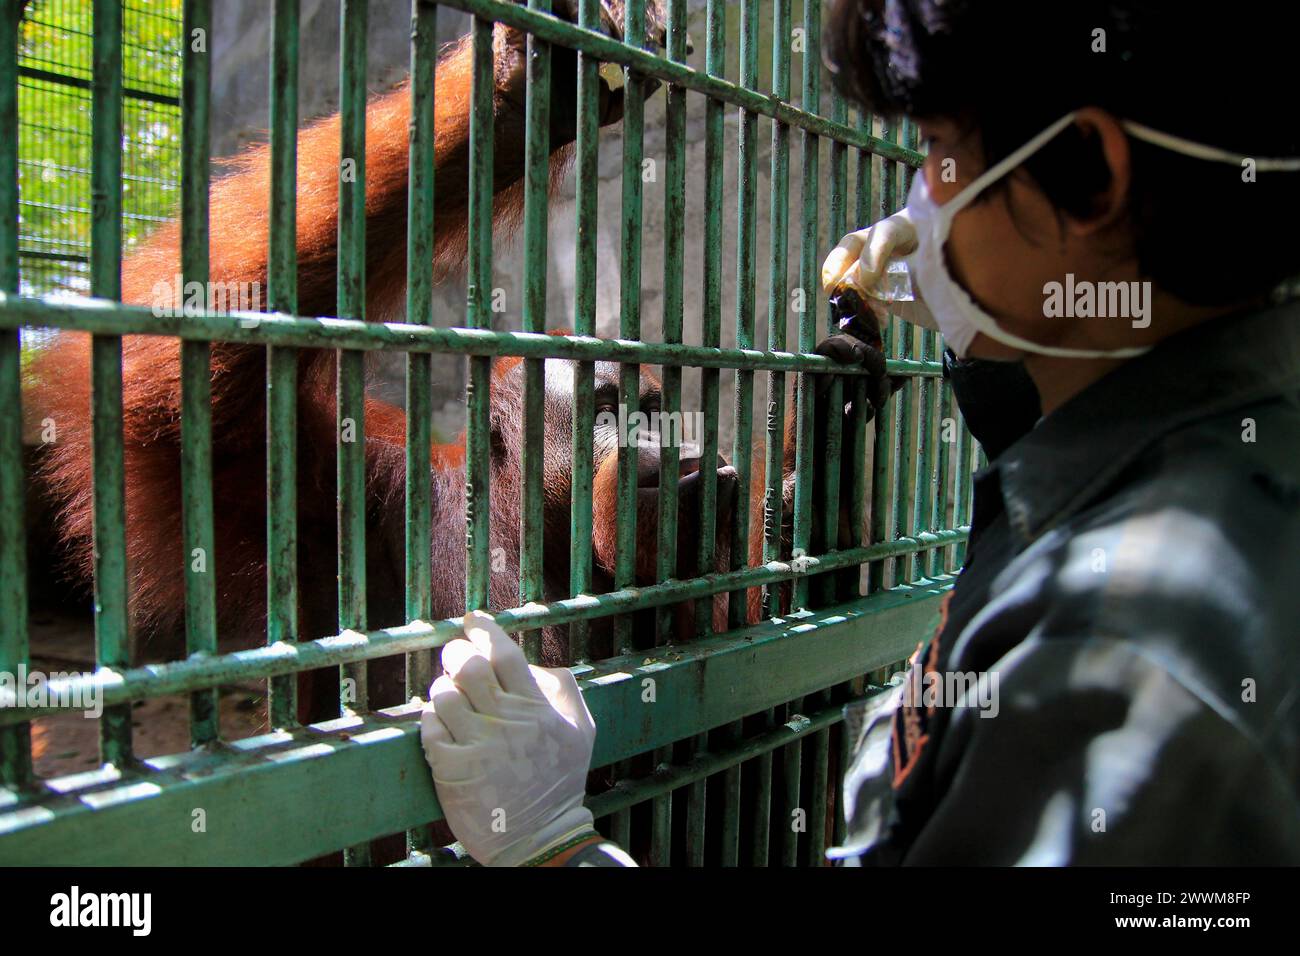 Gli oranghi borneani adulti (Pongo pygmaeus) sembrano felici quando i custodi degli animali danno vitamine confezionate in sacchetti di plastica al Wildlife Rescue Center. Foto Stock